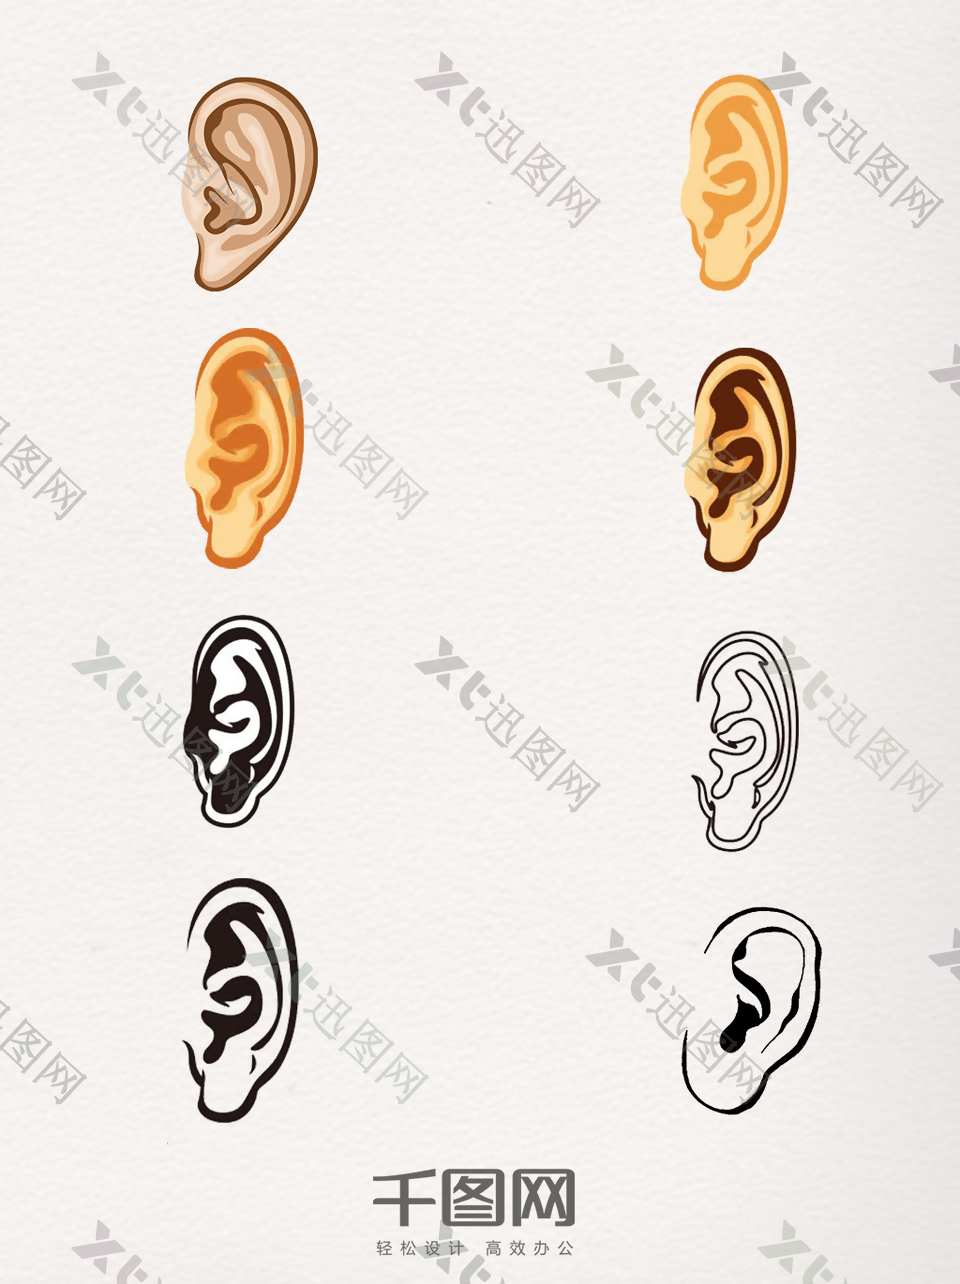 一组手绘人体耳朵图片